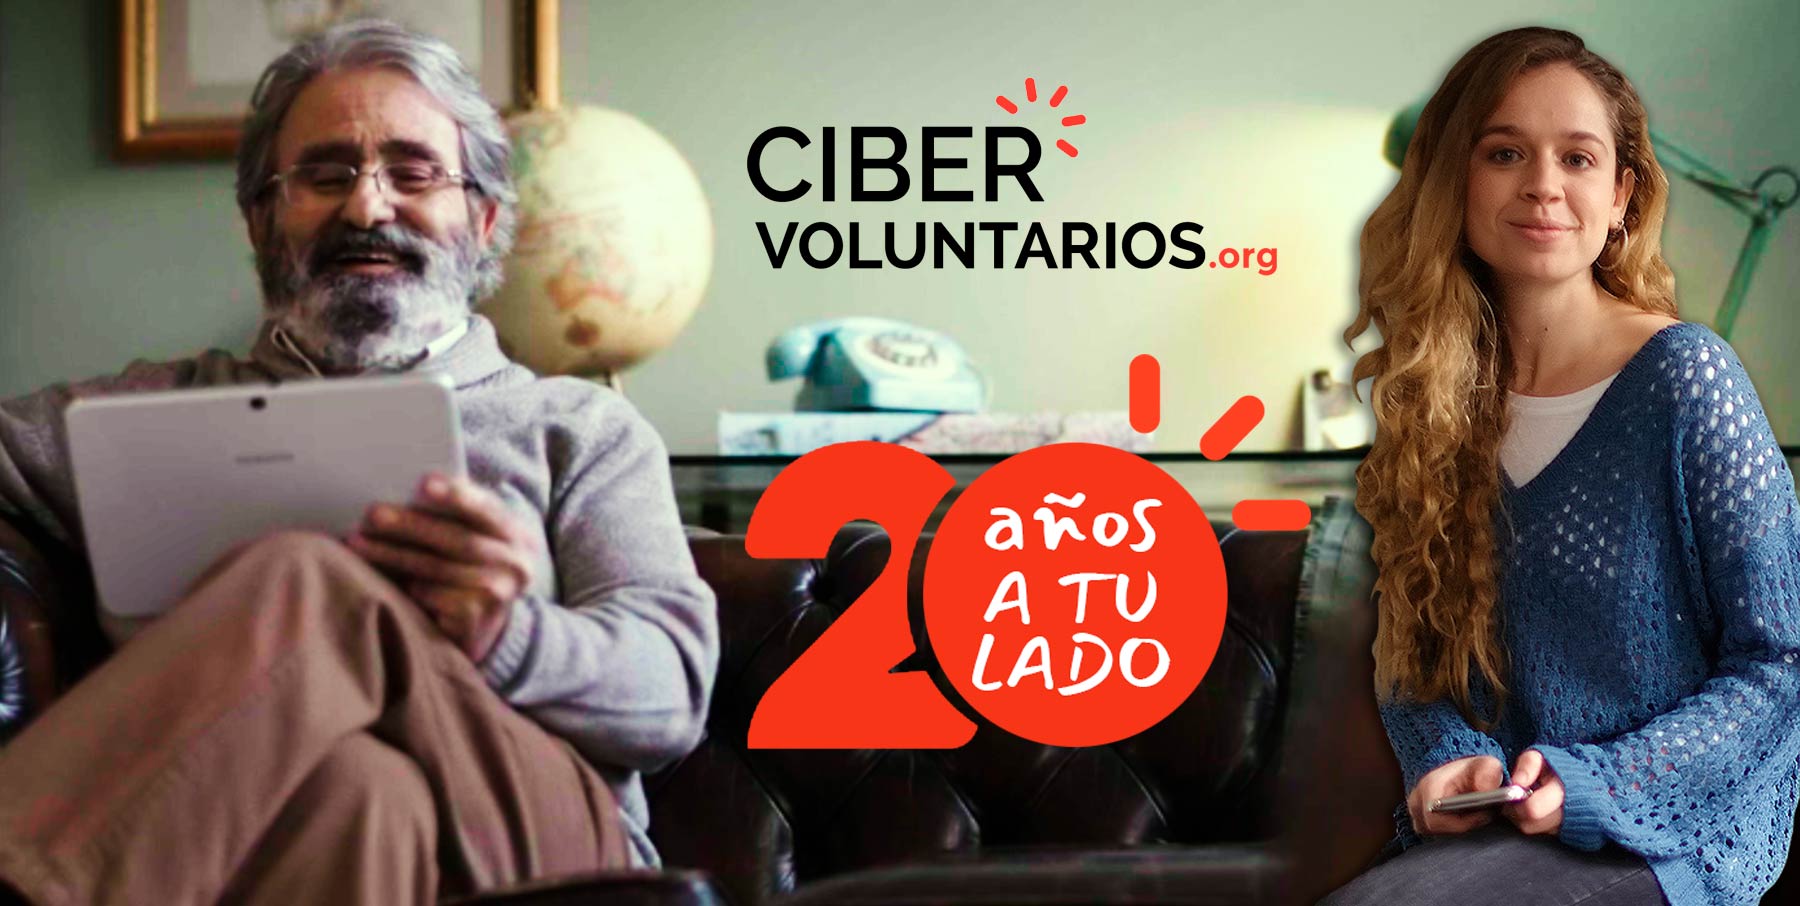 Cibervoluntarios.org cumple 20 años a tu lado